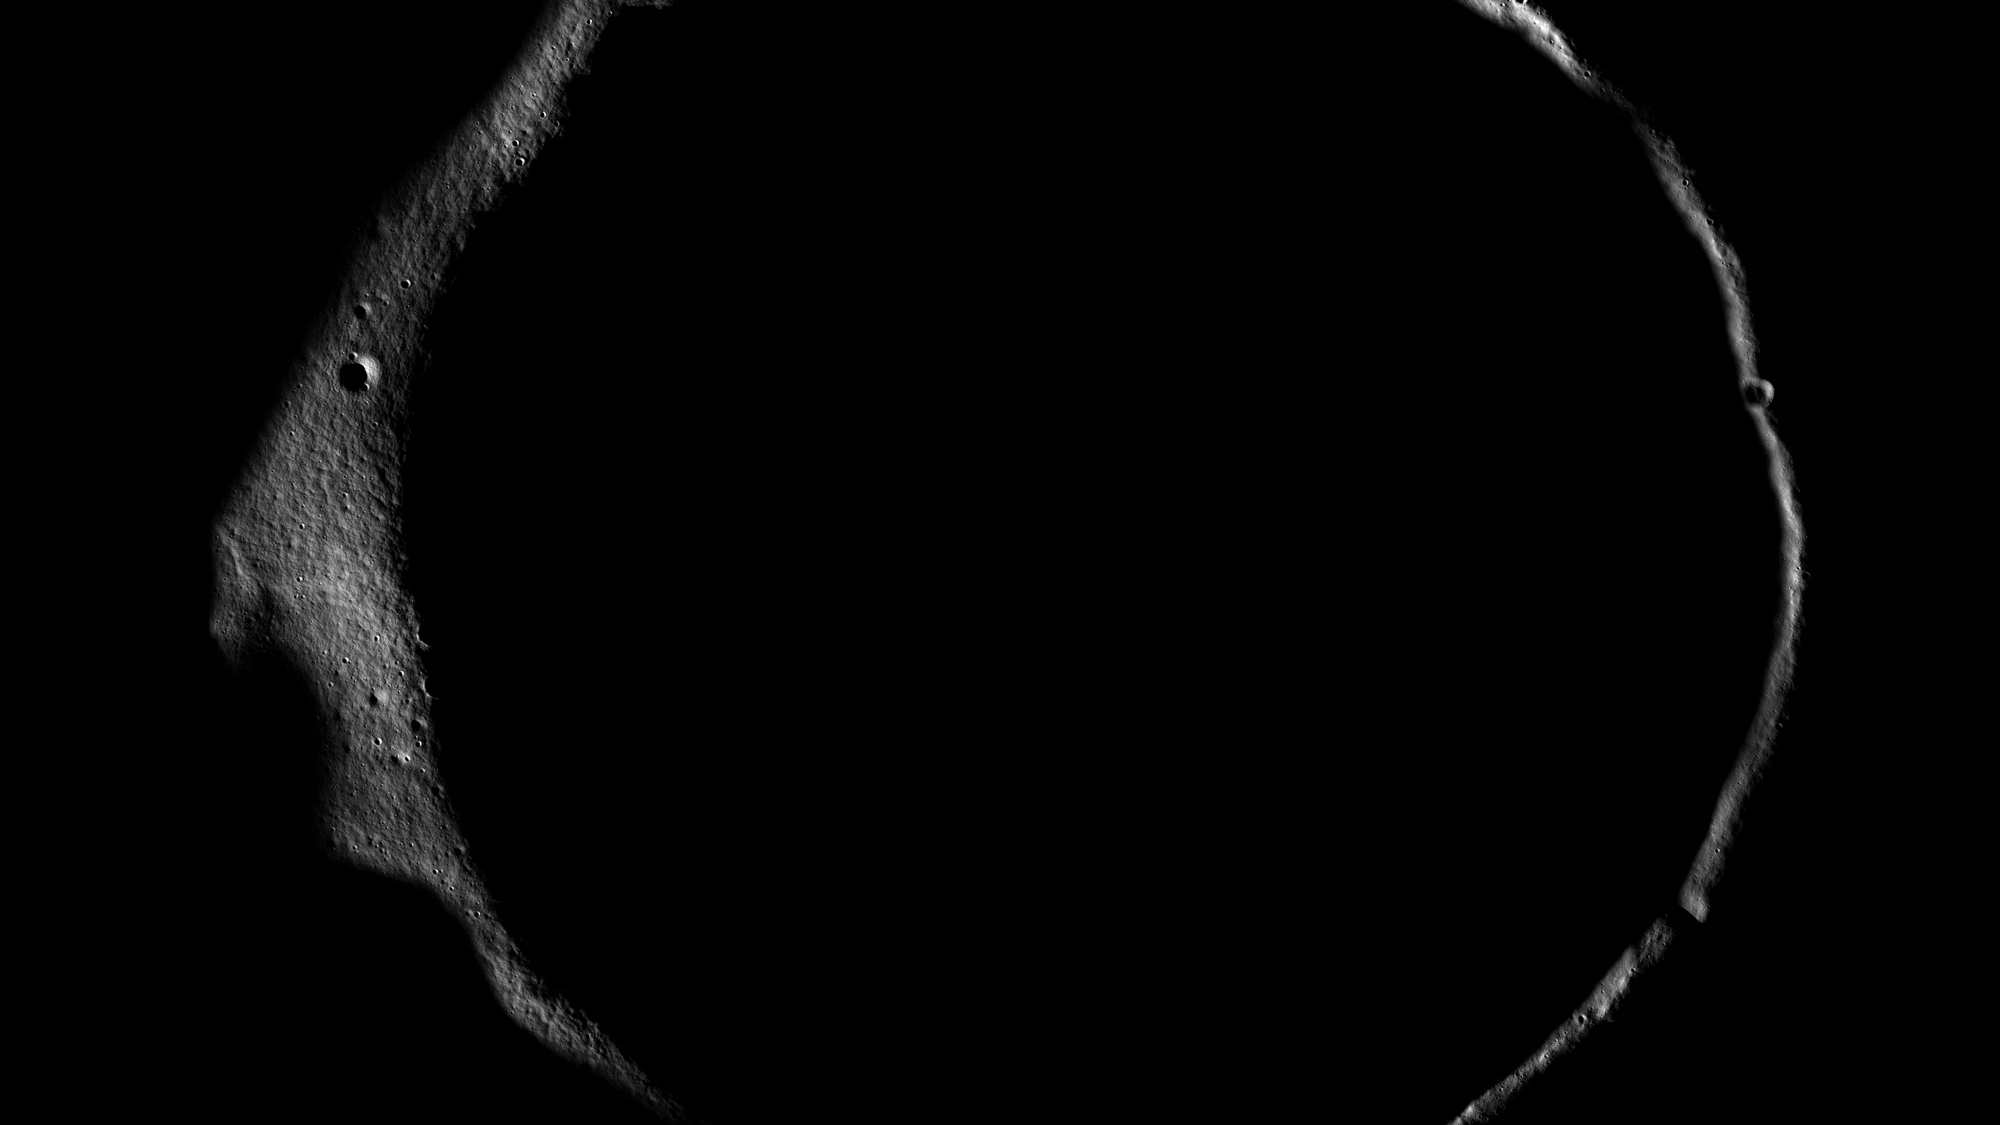 Umbra unui crater lunar.